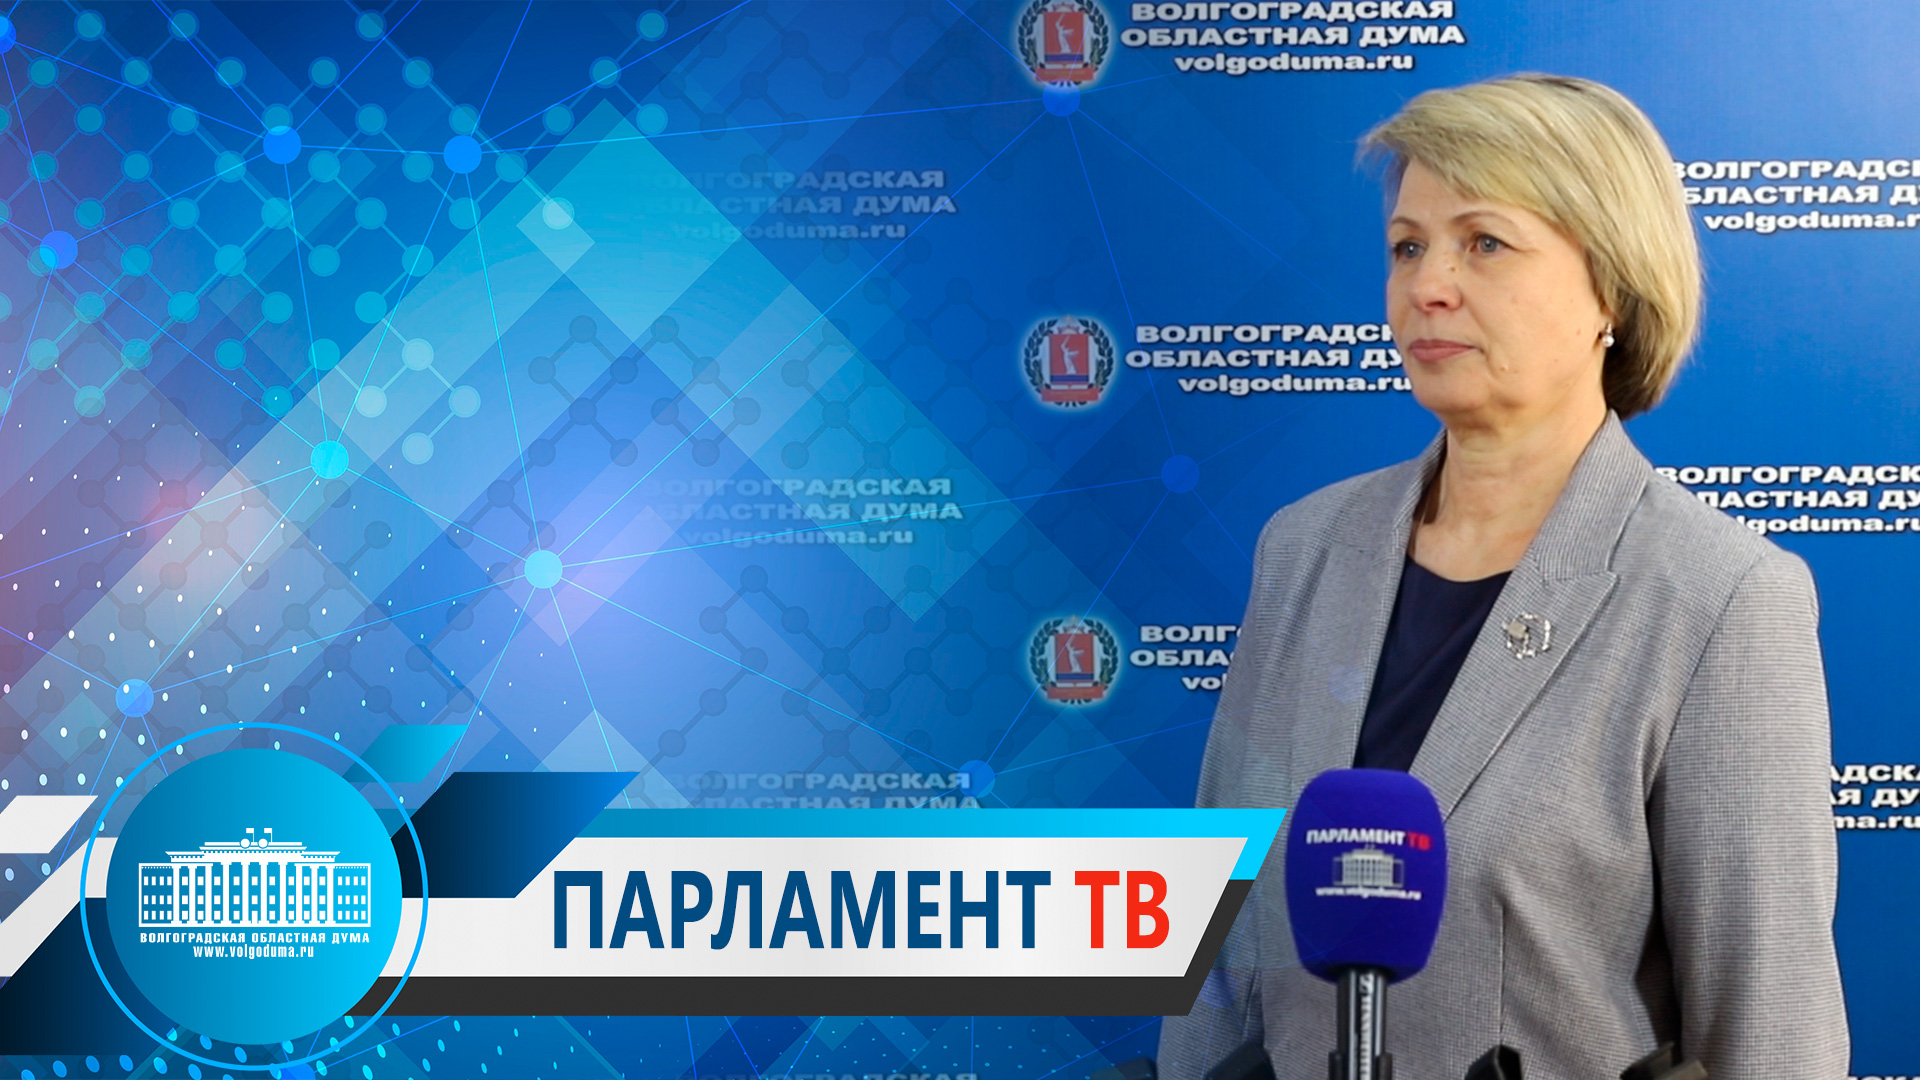 Татьяна Распутина: "Бесплатная юрпомощь помогает гражданам льготных категорий решать важные вопросы"